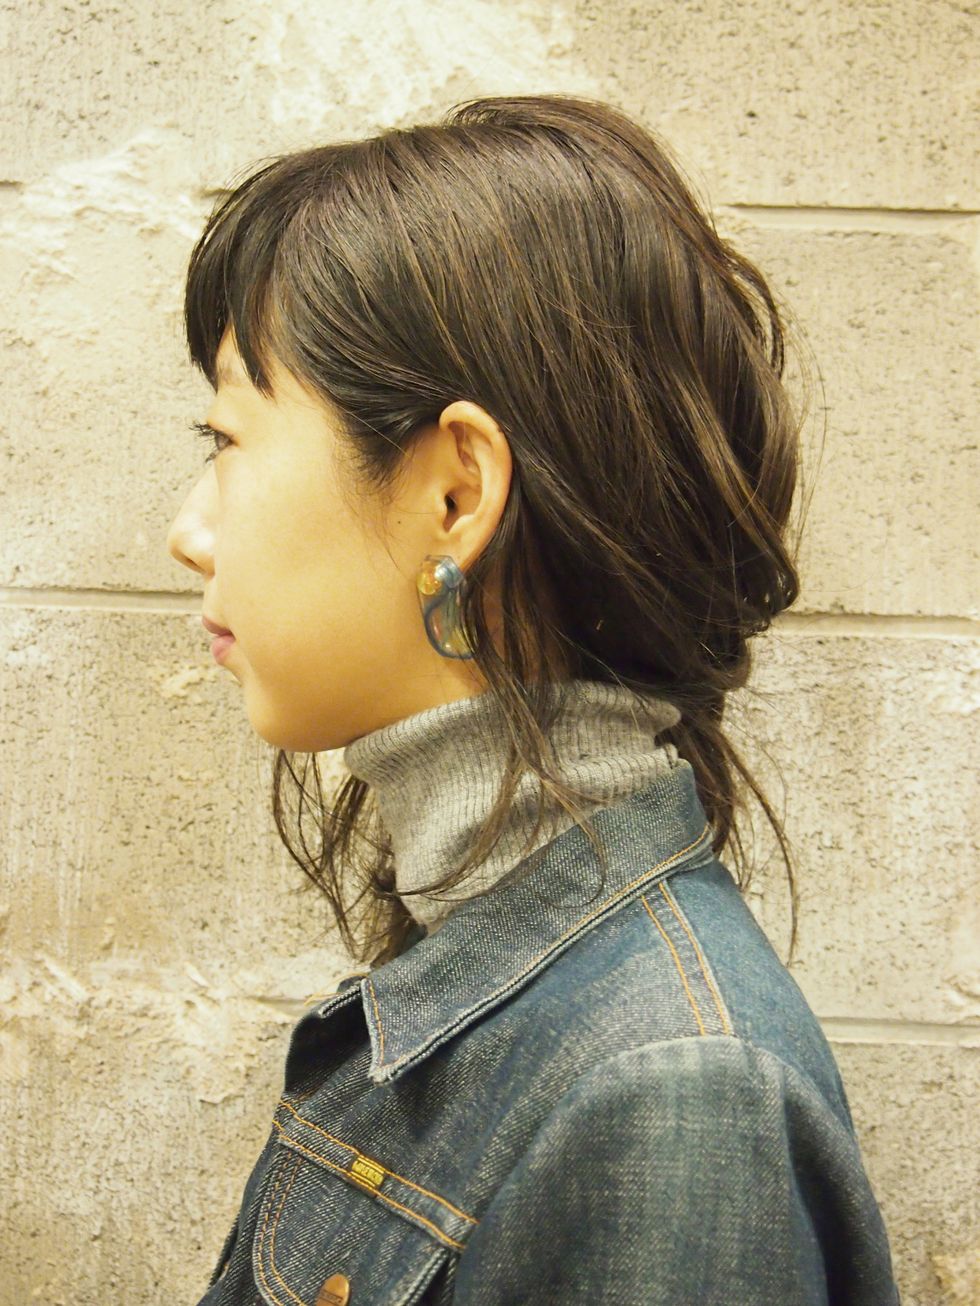 Ear, Hairstyle, Earrings, Chin, Style, Jacket, Street fashion, Body piercing, Beauty, Temple, 